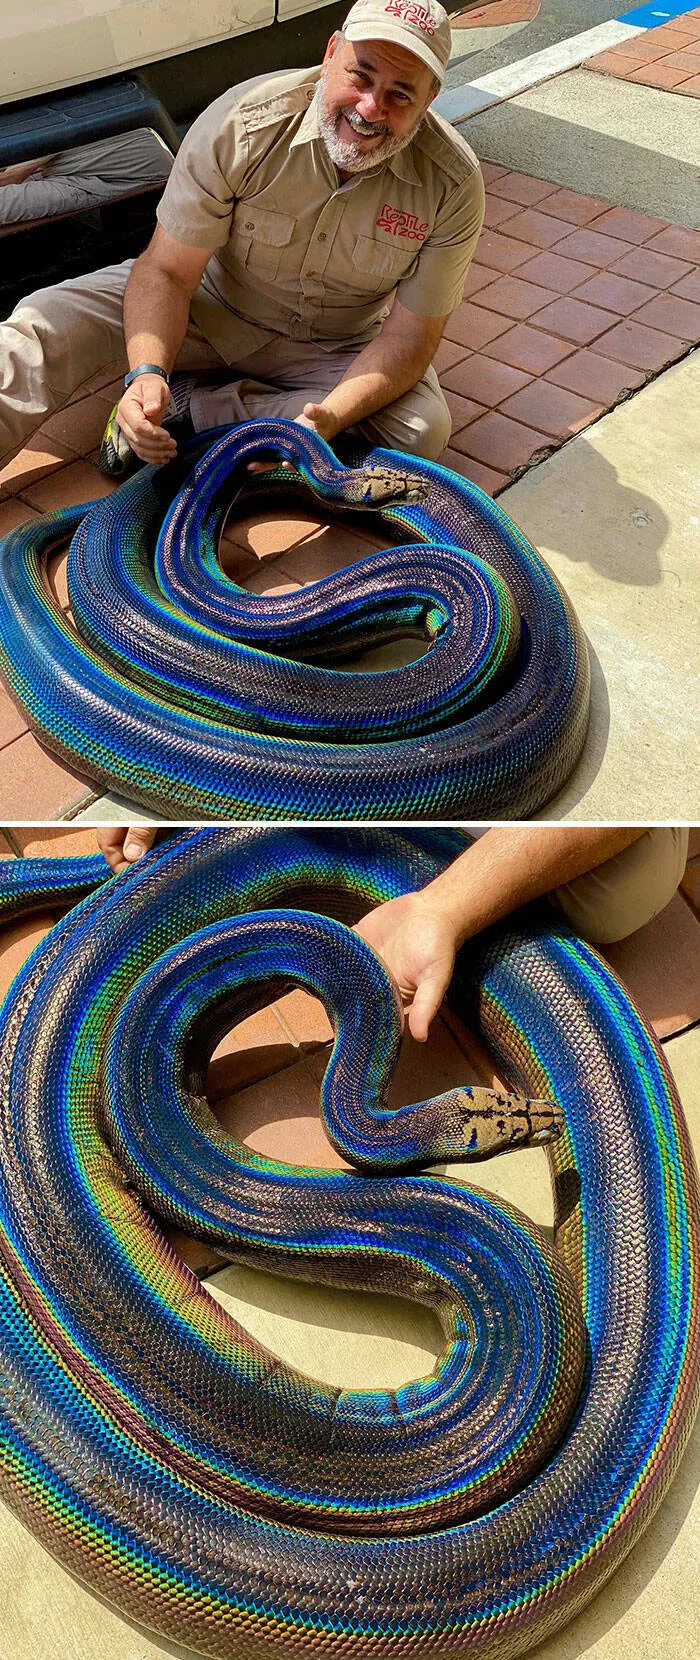 Dcouvertes insolites images curieuses sous des perspectives inhabituelles - #4 Un python coloré et rare